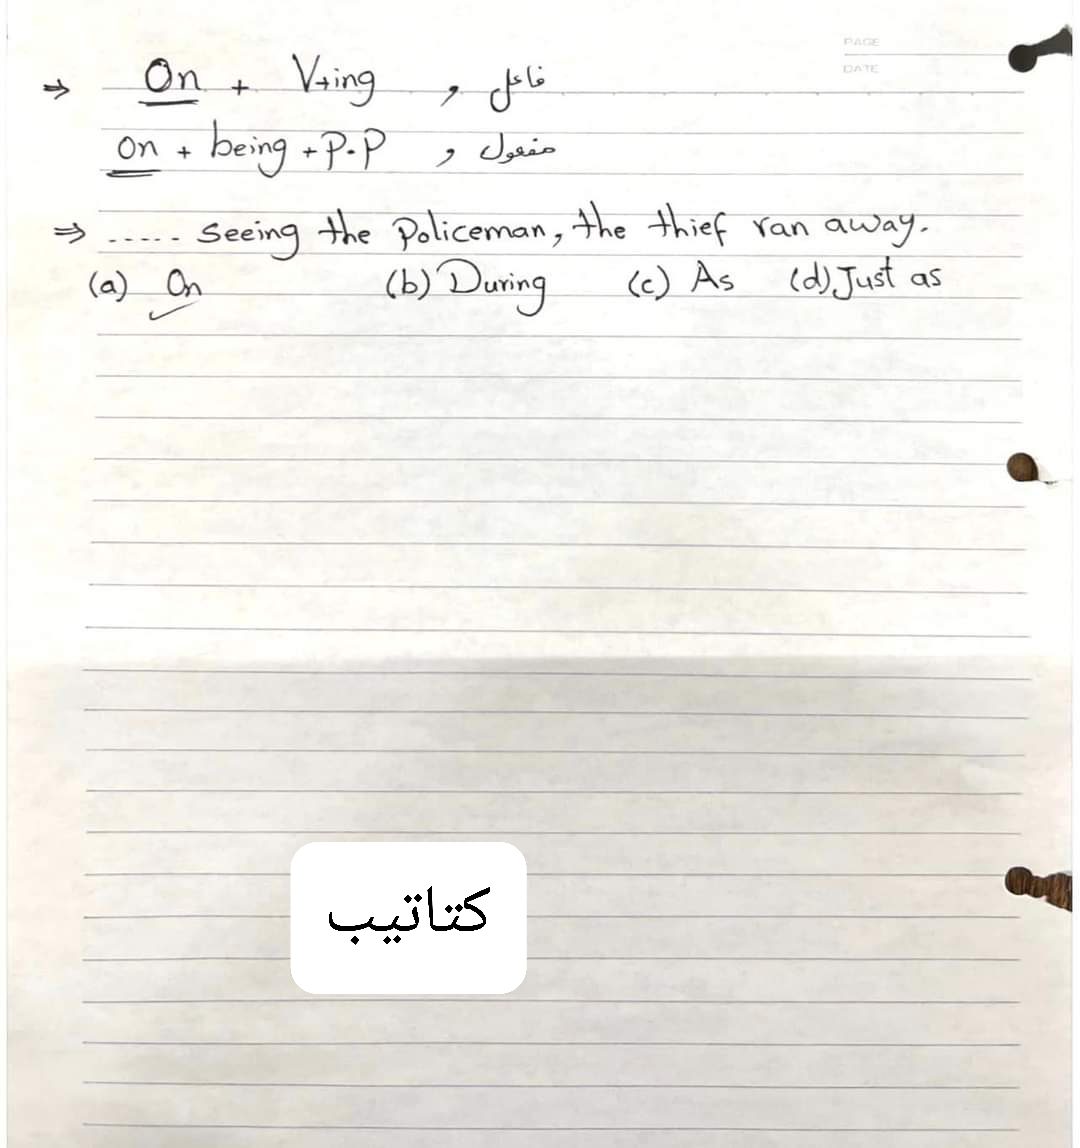 مذكرة مستر محمود رضوان (انجلشاوى) فى اللغة الانجليزية للصف الثالث الثانوى نظام حديث - تحميل مذكرات انجلشاوي